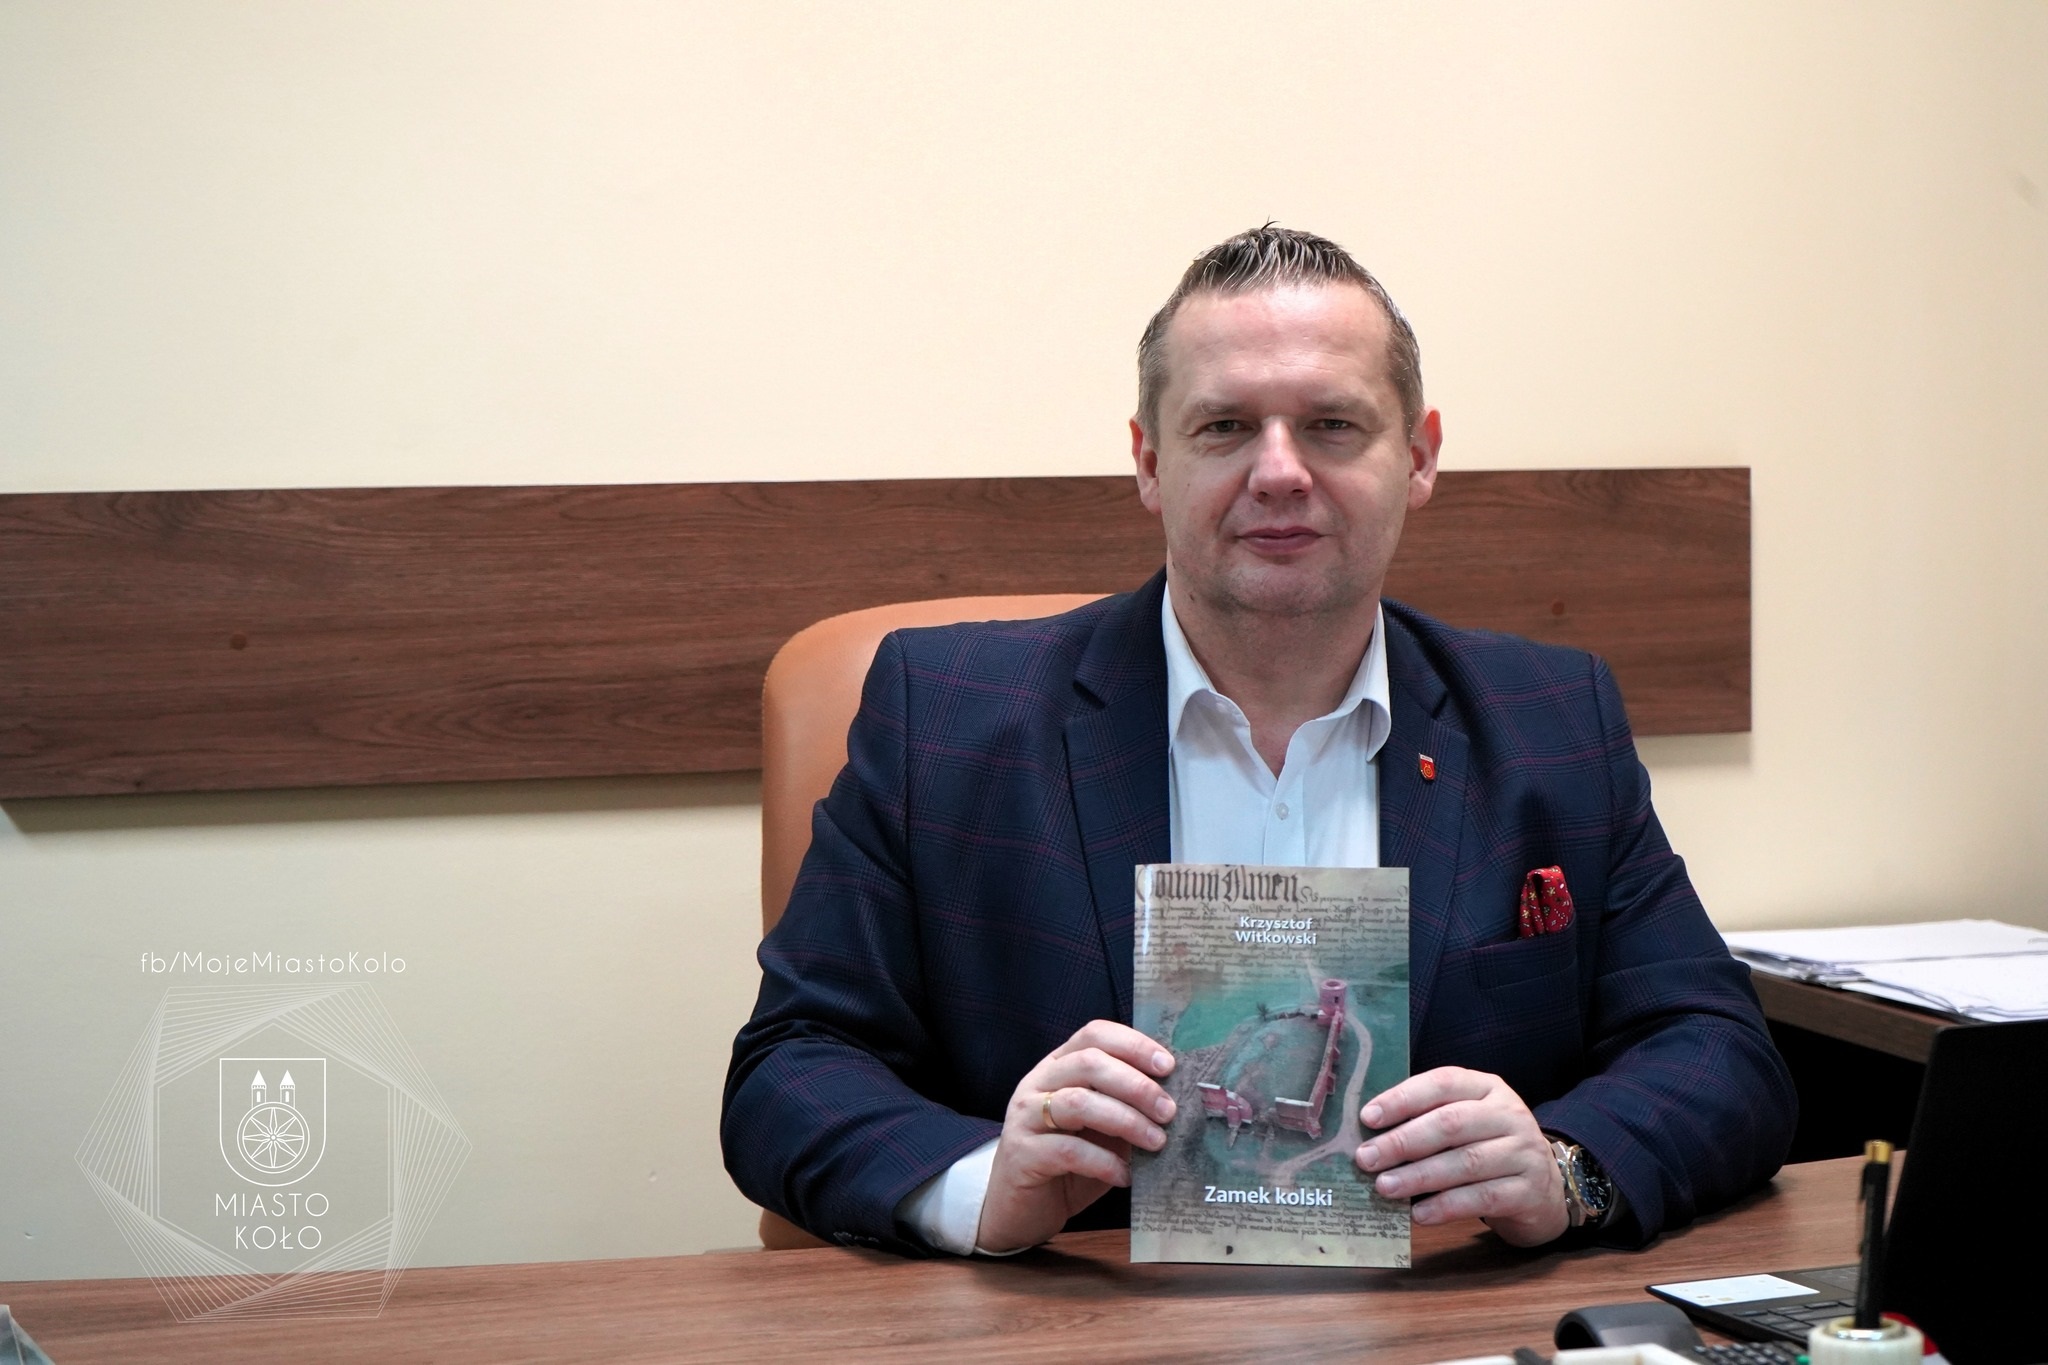 Burmistrz Miasta Koła Krzysztof Witkowski trzyma w dłoniach publikację o zamku królewskim w Kole